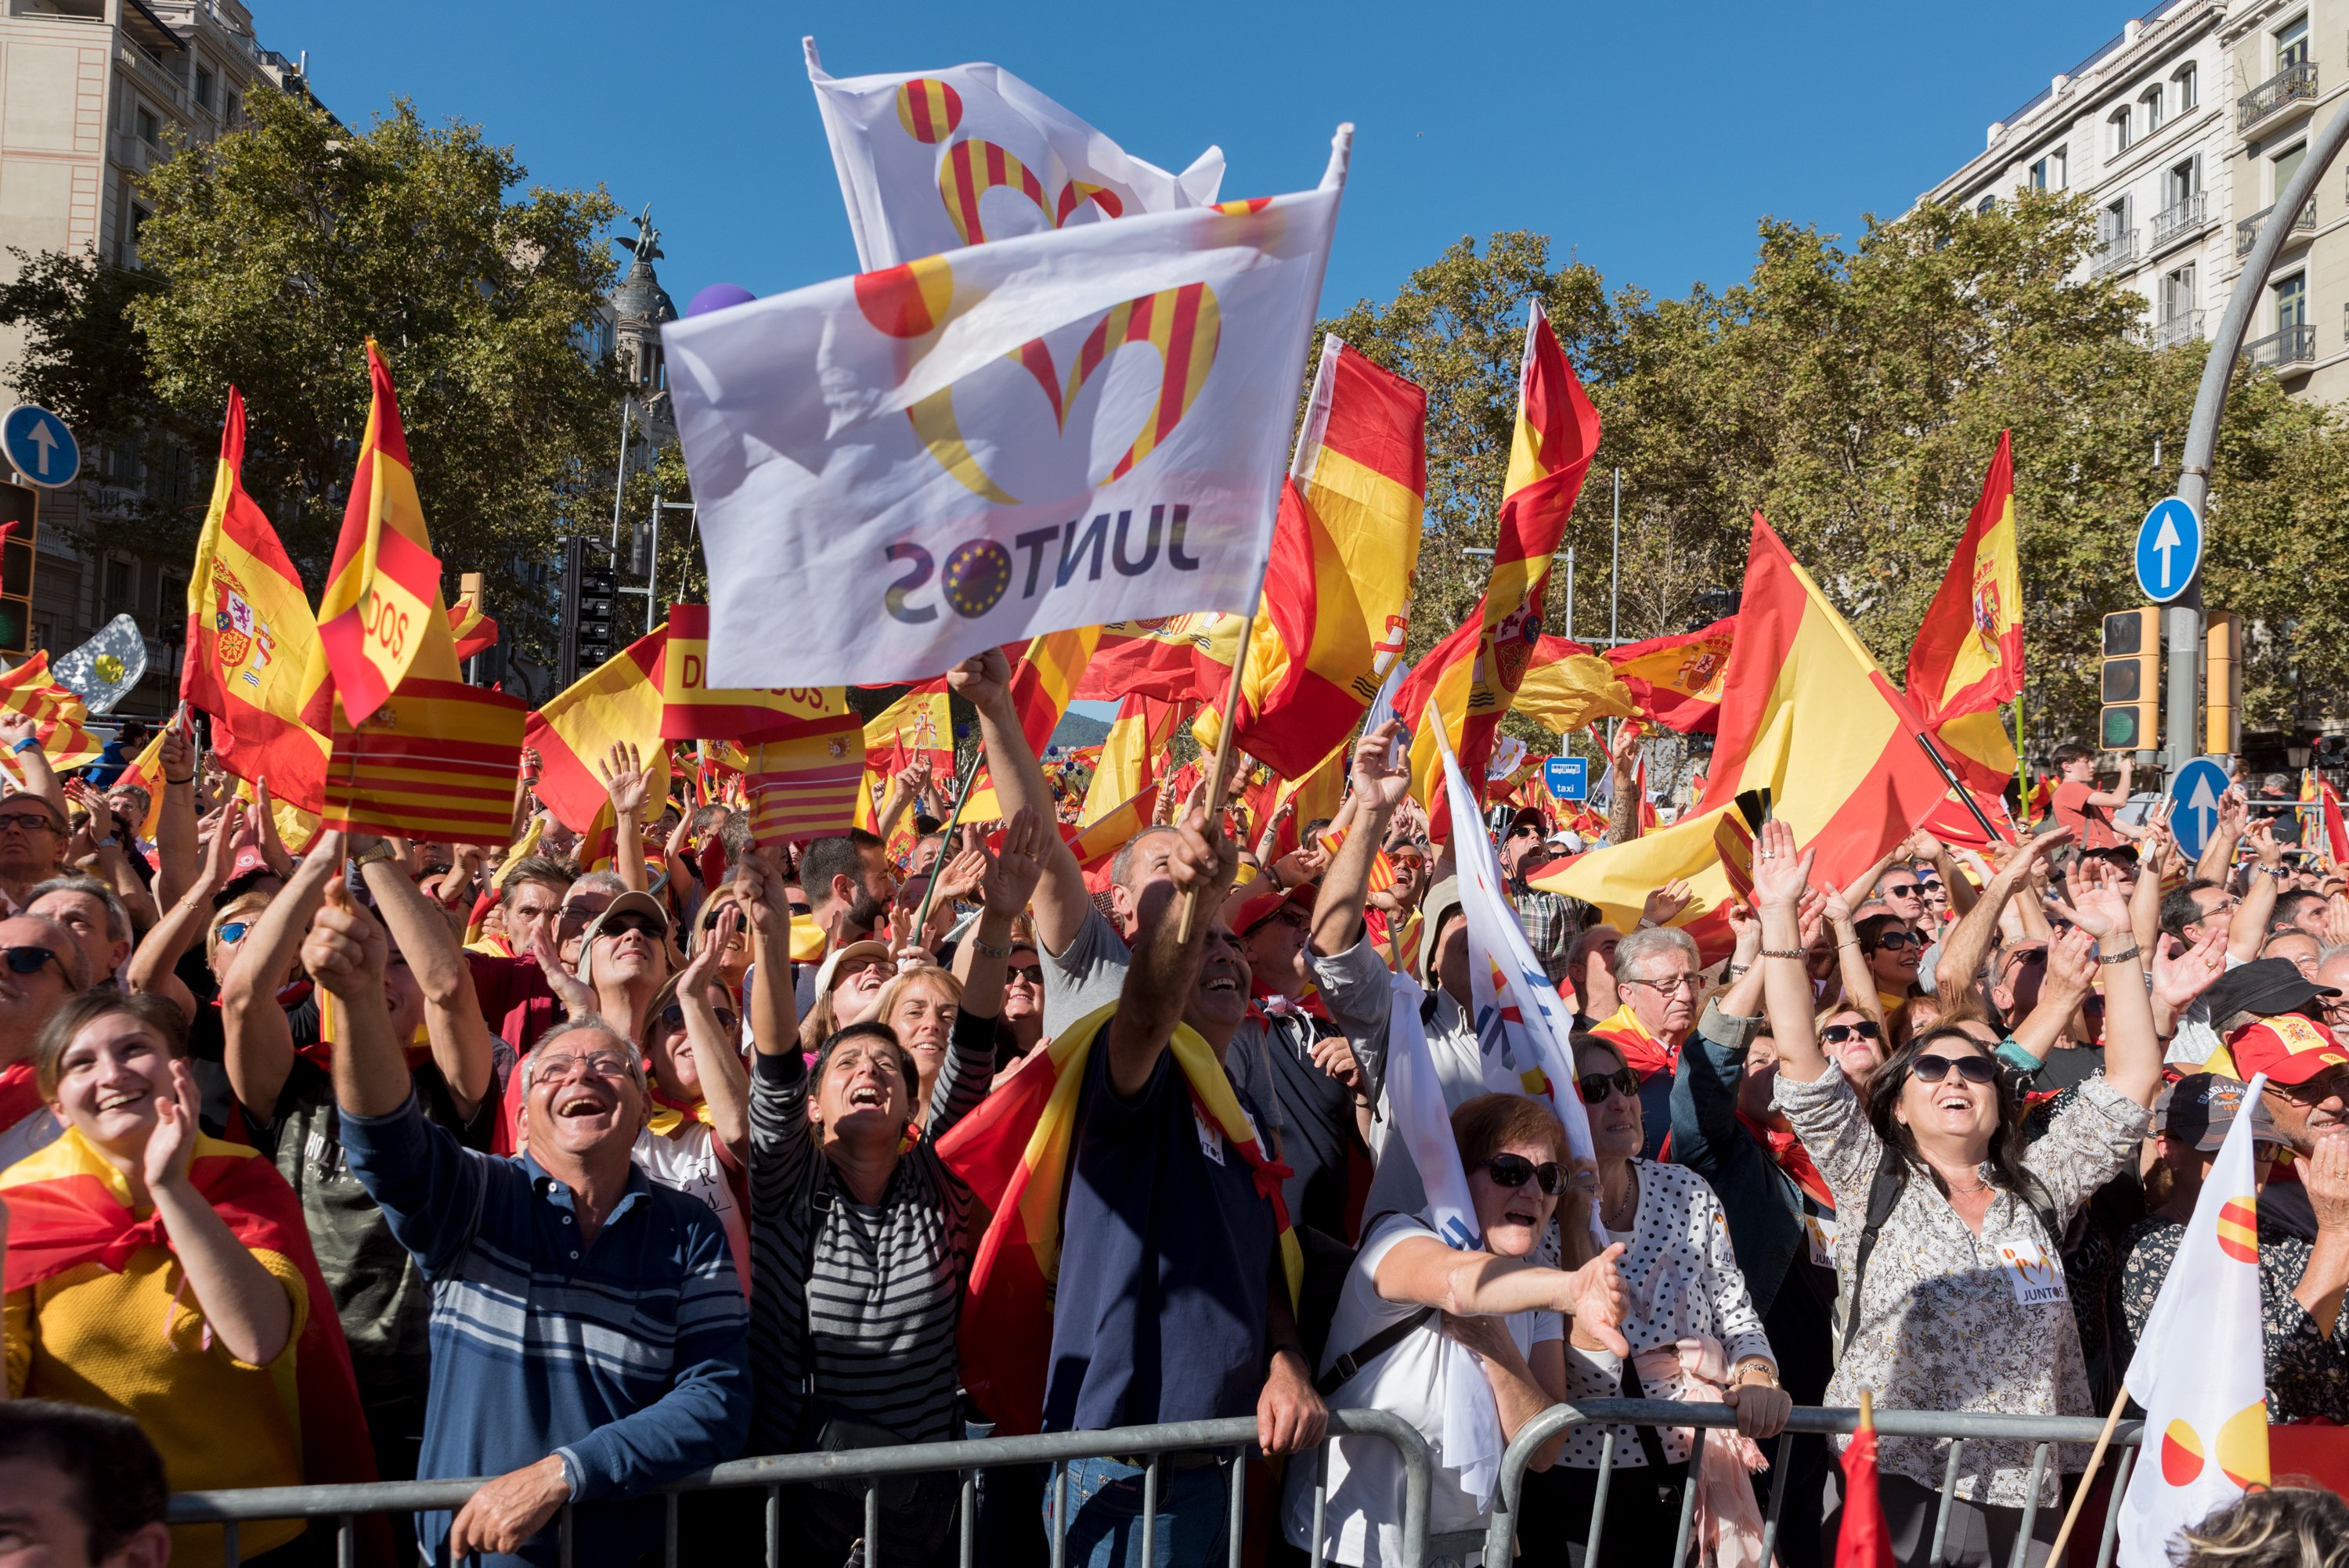 Sociedad Civil Catalana responde a Torra con la amenaza de convocar macromanifestaciones